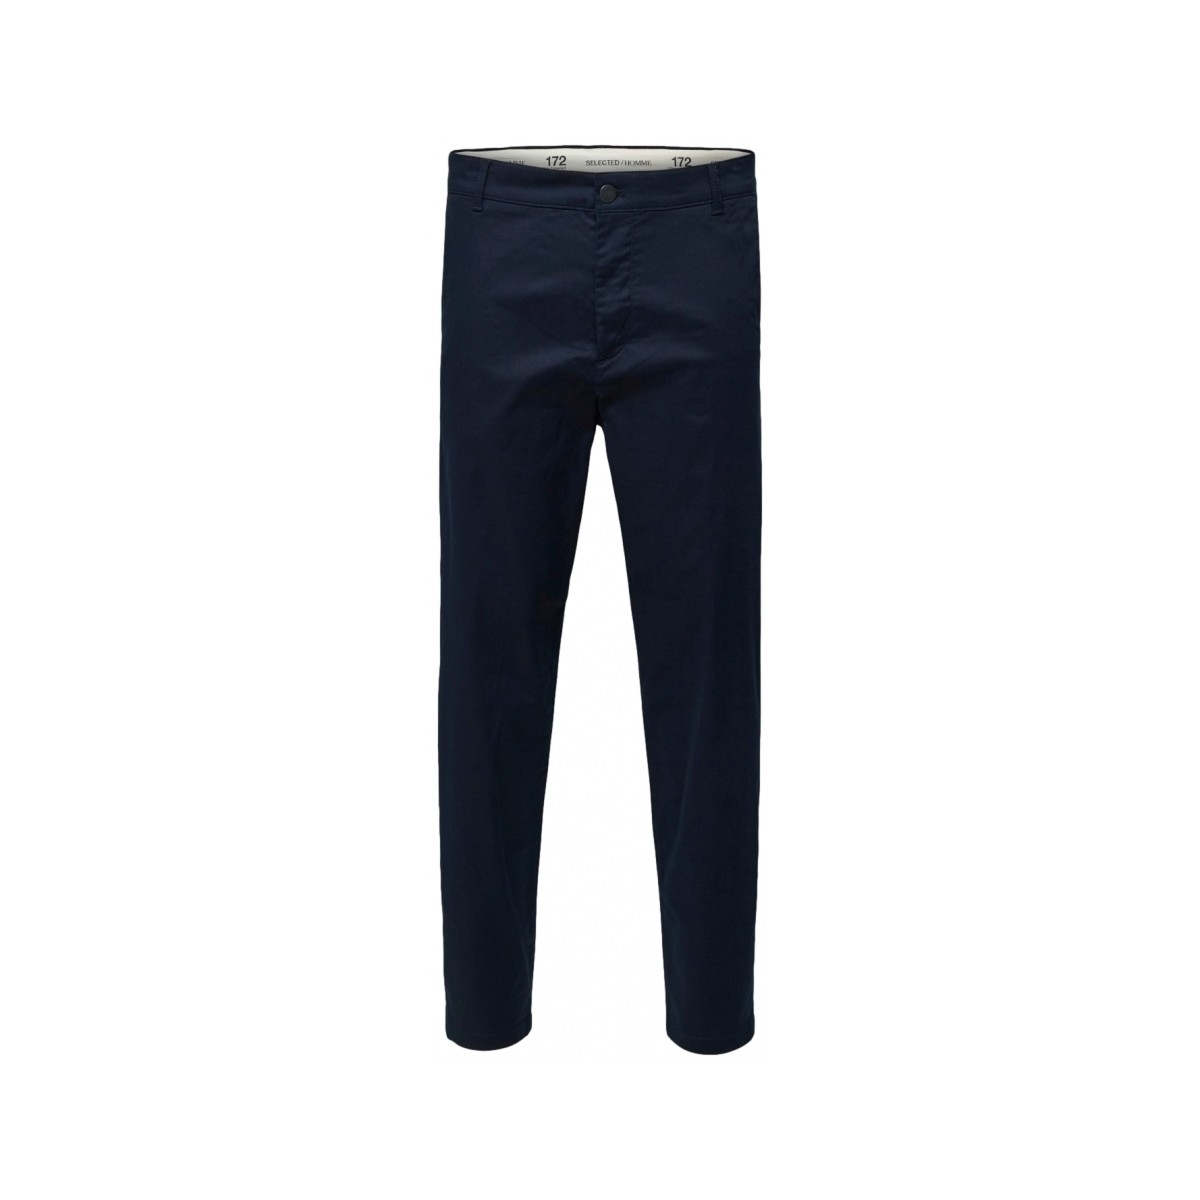 Textiel Heren Broeken / Pantalons Selected Slim Tape Repton 172 Flex Pants - Dark Sapphire Blauw